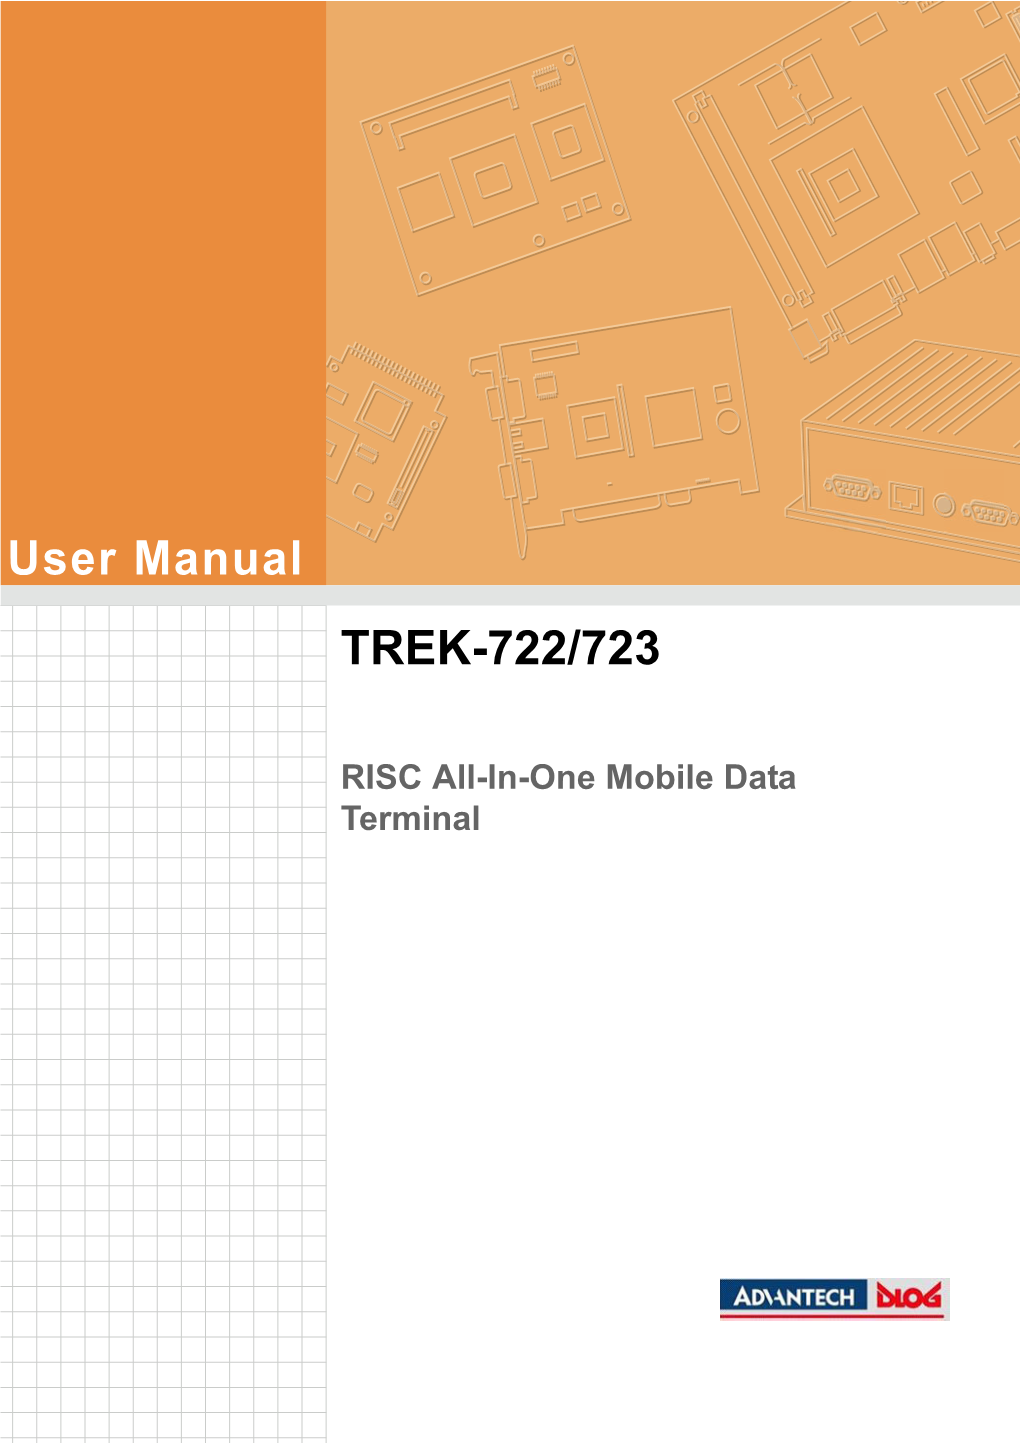 User Manual TREK-722/723